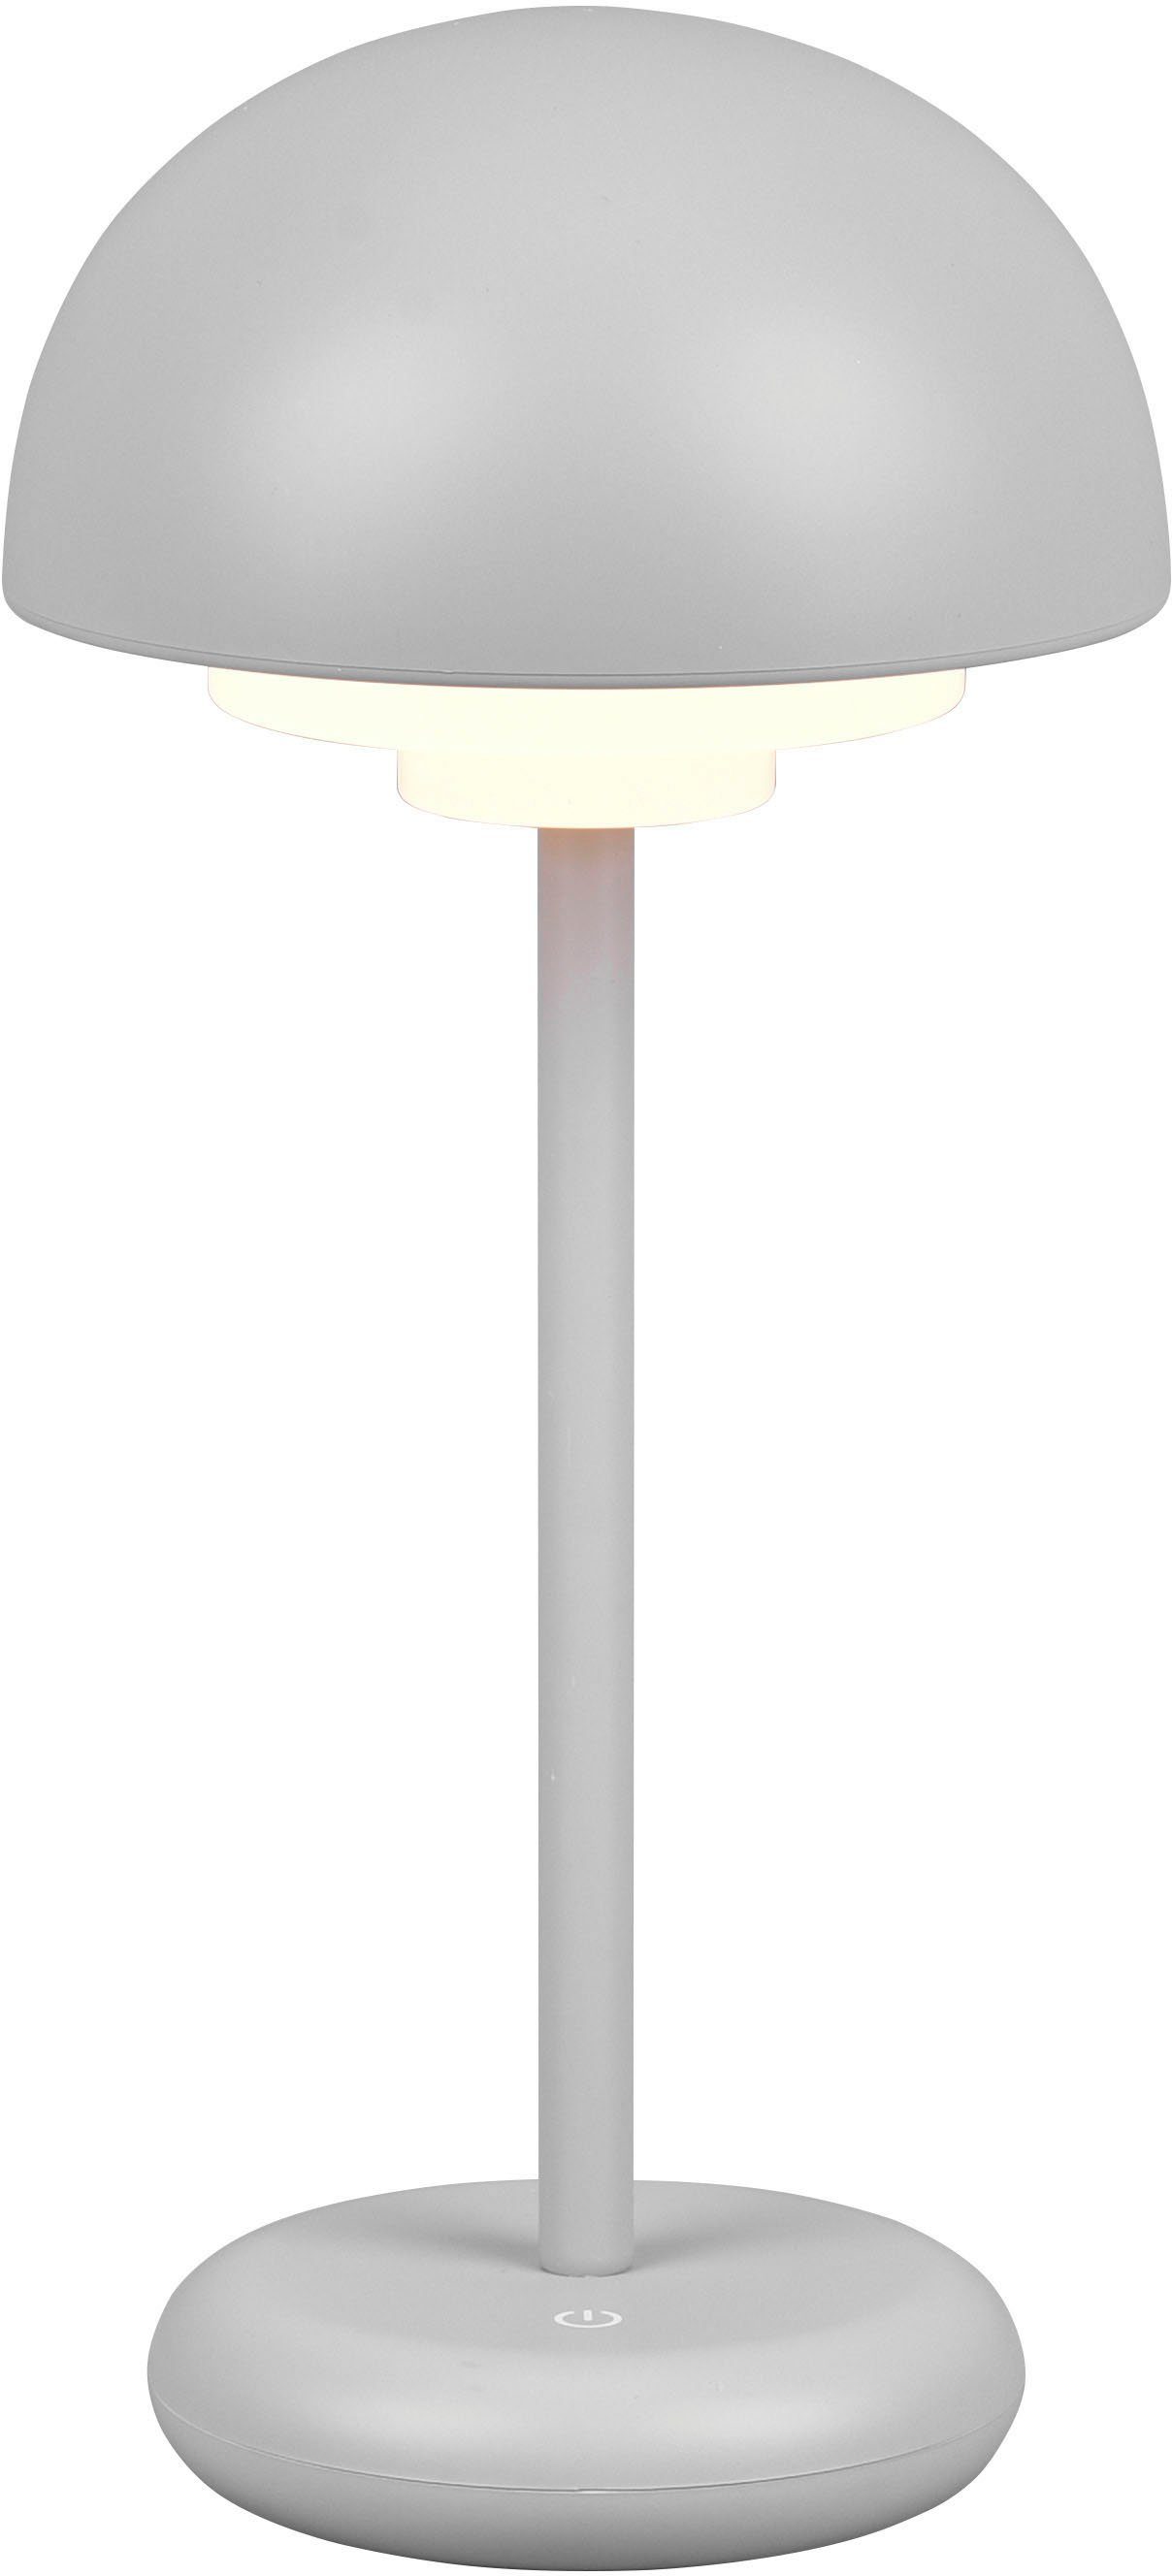 fest / USB-C mehrere Pilzform Helligkeitsstufen, Tischlampe Outdoor Elliot, Ladekabel, TRIO integriert, 30 4 cm mit Höhe cm 13 Leuchten Ø Außen-Tischleuchte Akku, Warmweiß, LED Ladefunktion, Dimmstufen, USB-Anschluss 30cm, LED